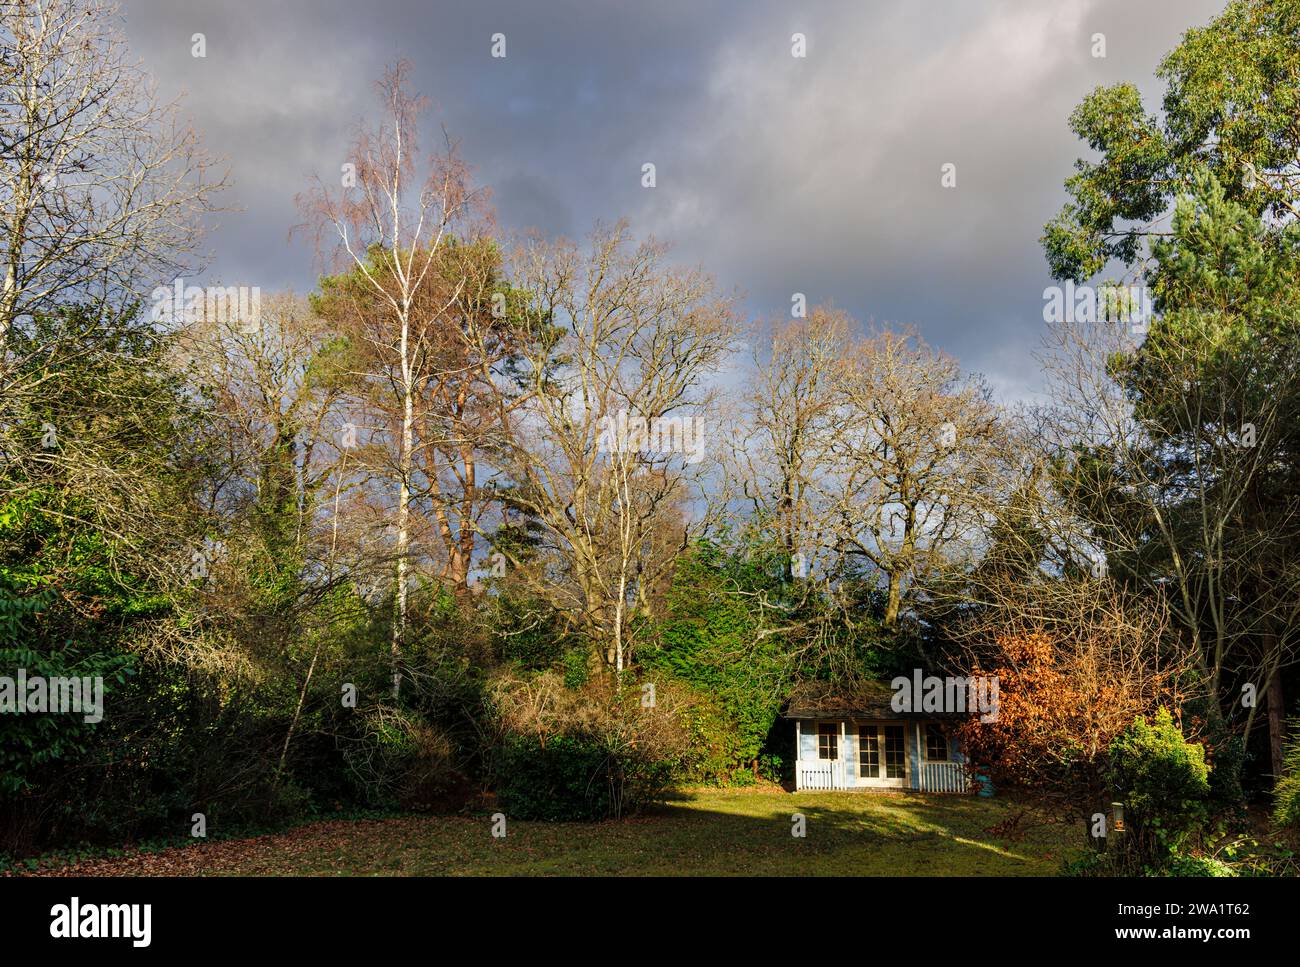 Winterwetter in Großbritannien: Gartenschuppen und Laubbäume einschließlich Silberbirken (Betula pendula) in der Sonne vor grauen dunklen Regenwolken, Surrey Stockfoto